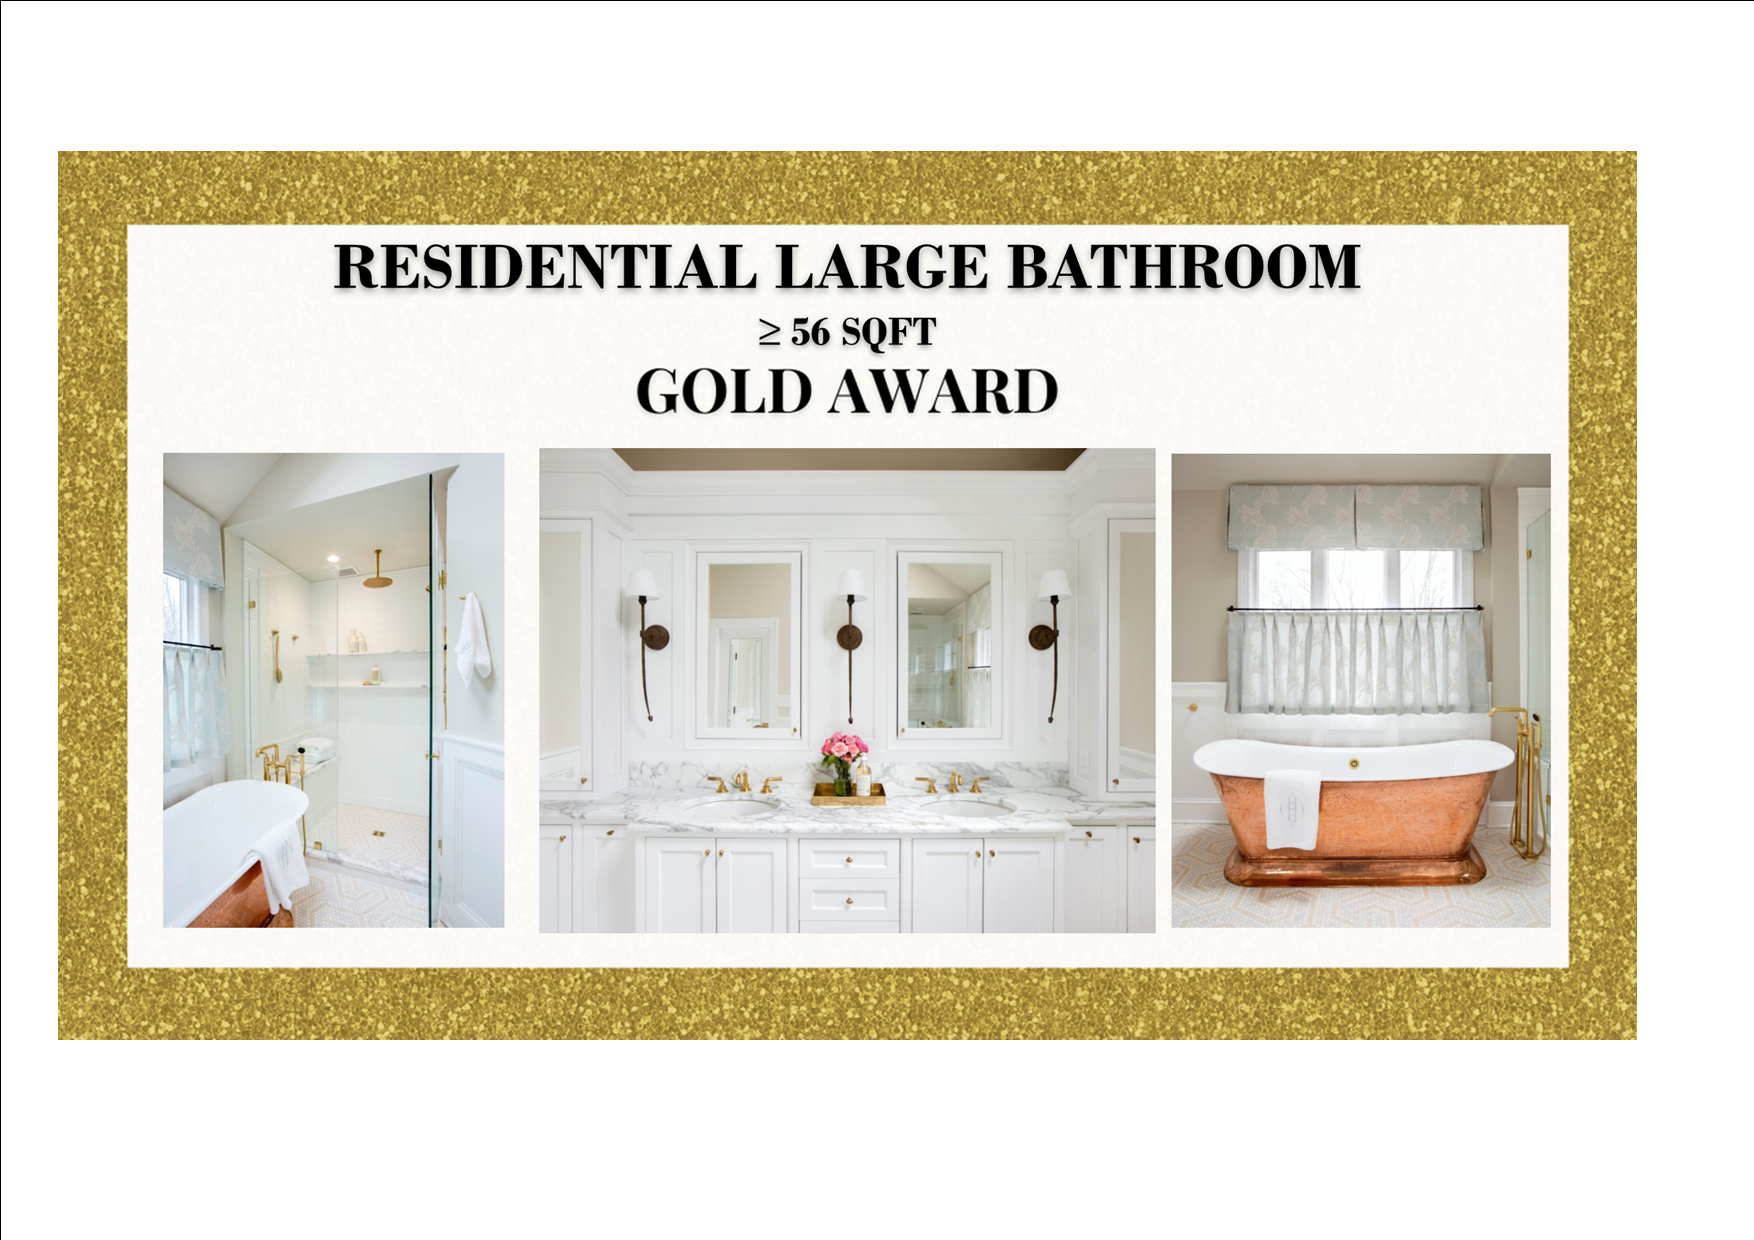 Gold Award Winner Residential Large Bathroom